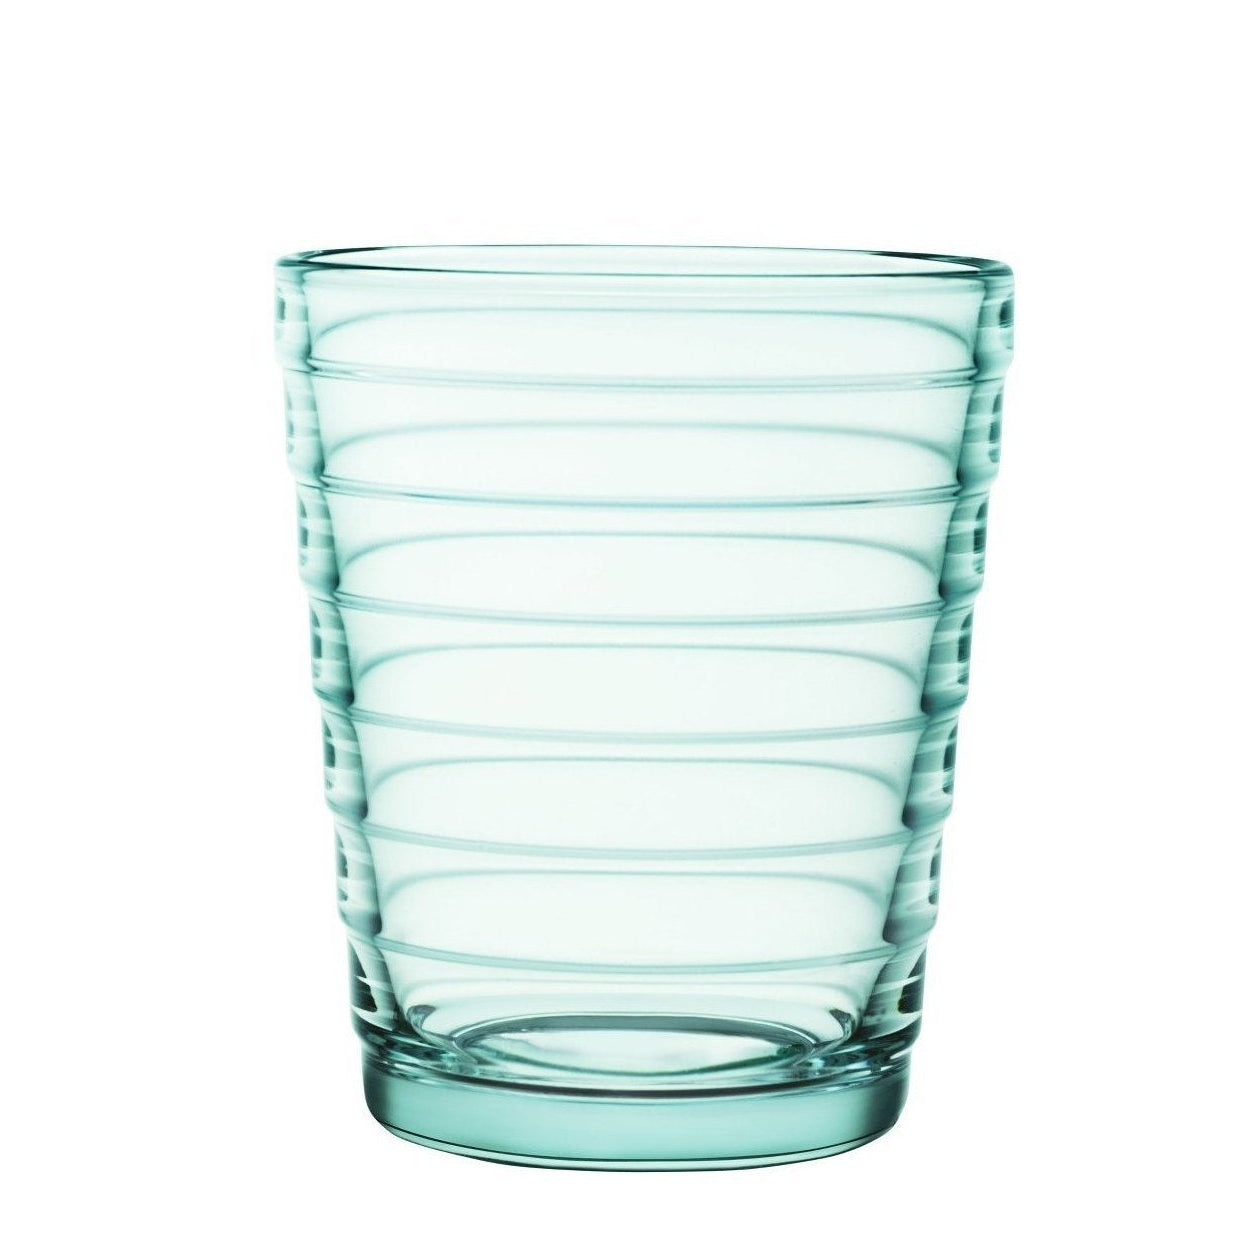 Iittala Aino aalto glas vatten grönt 2 st, 22cl